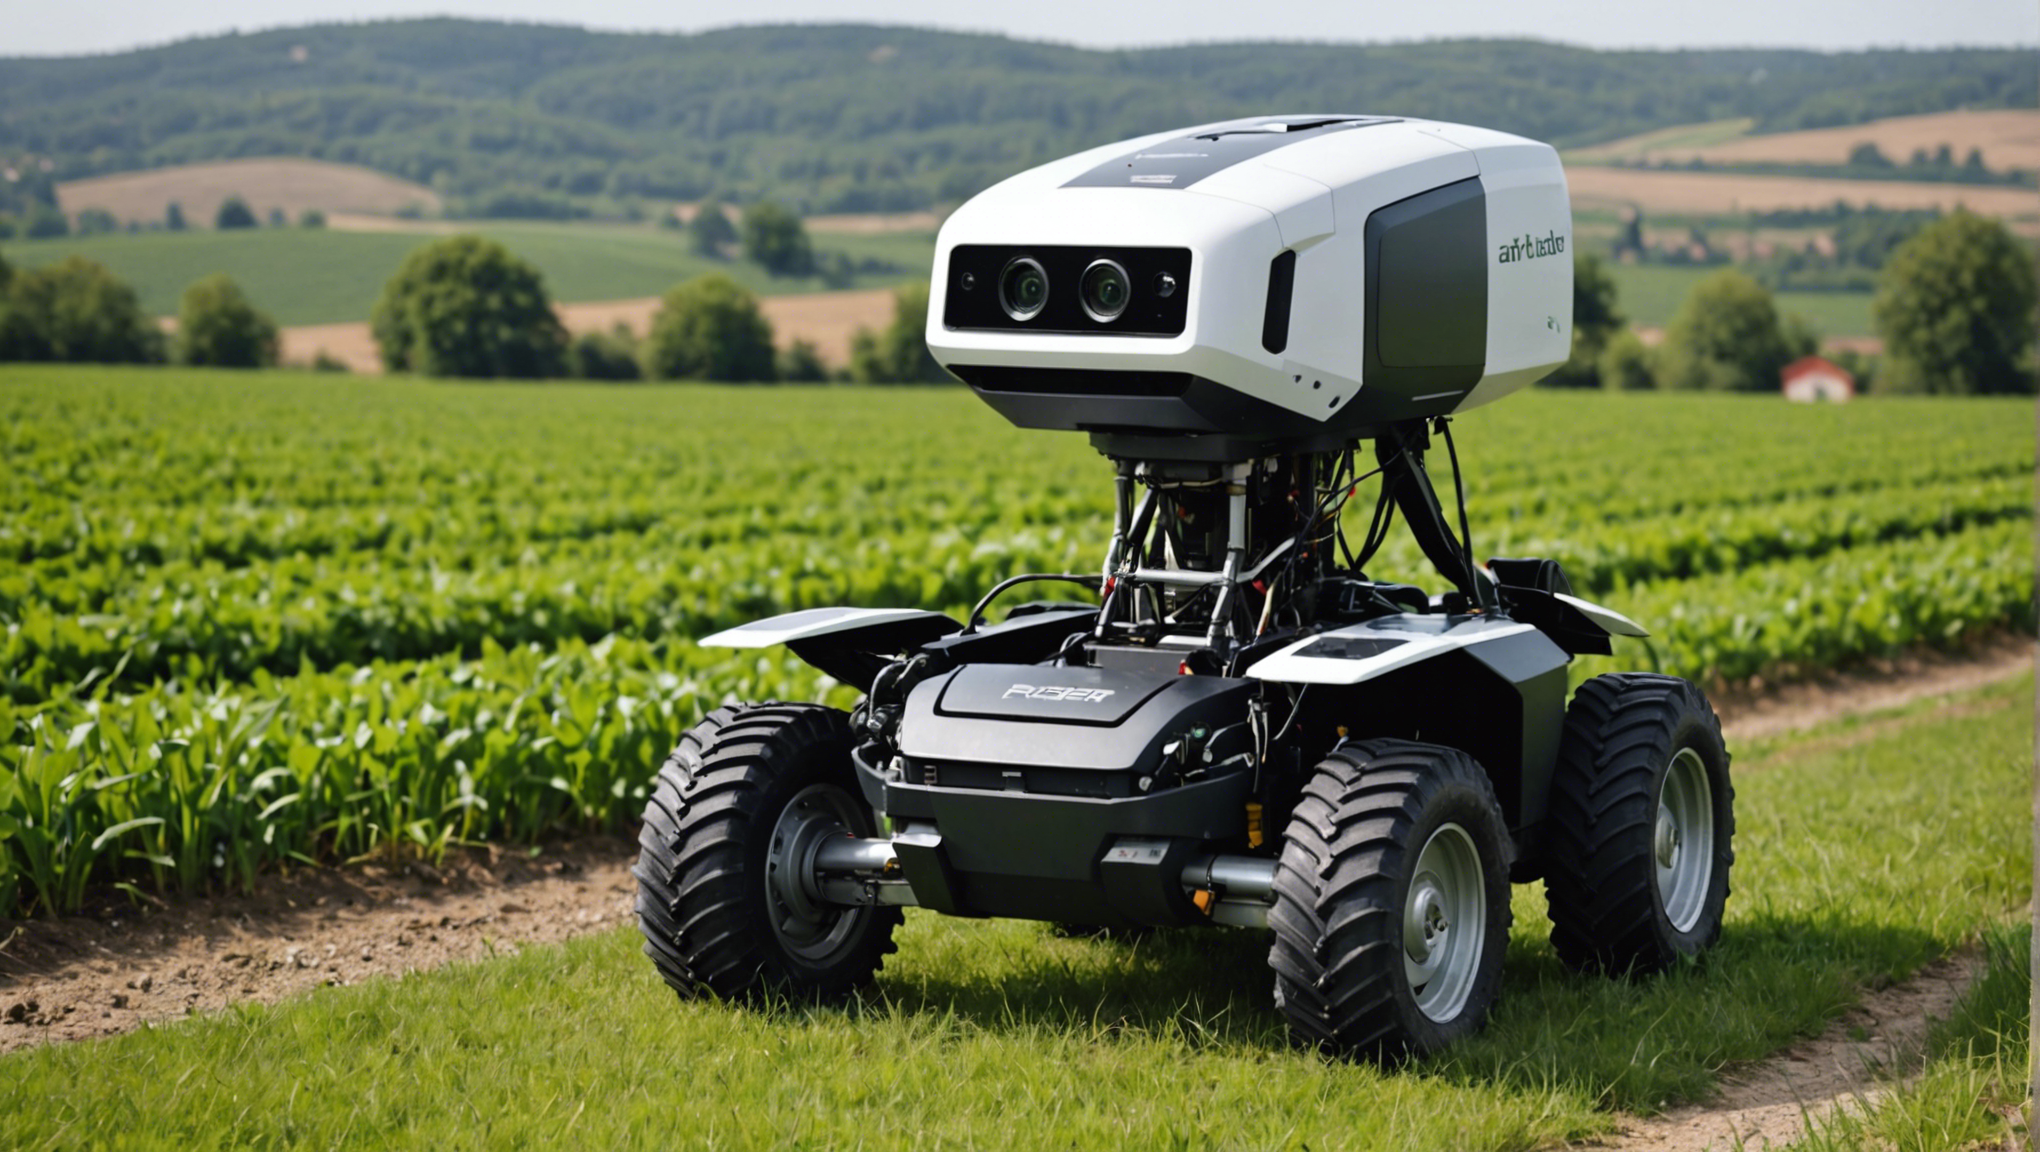 louez un robot en ardèche : découvrez la révolution technologique au service de l'agriculture. profitez de la location de robot pour optimiser vos opérations agricoles.